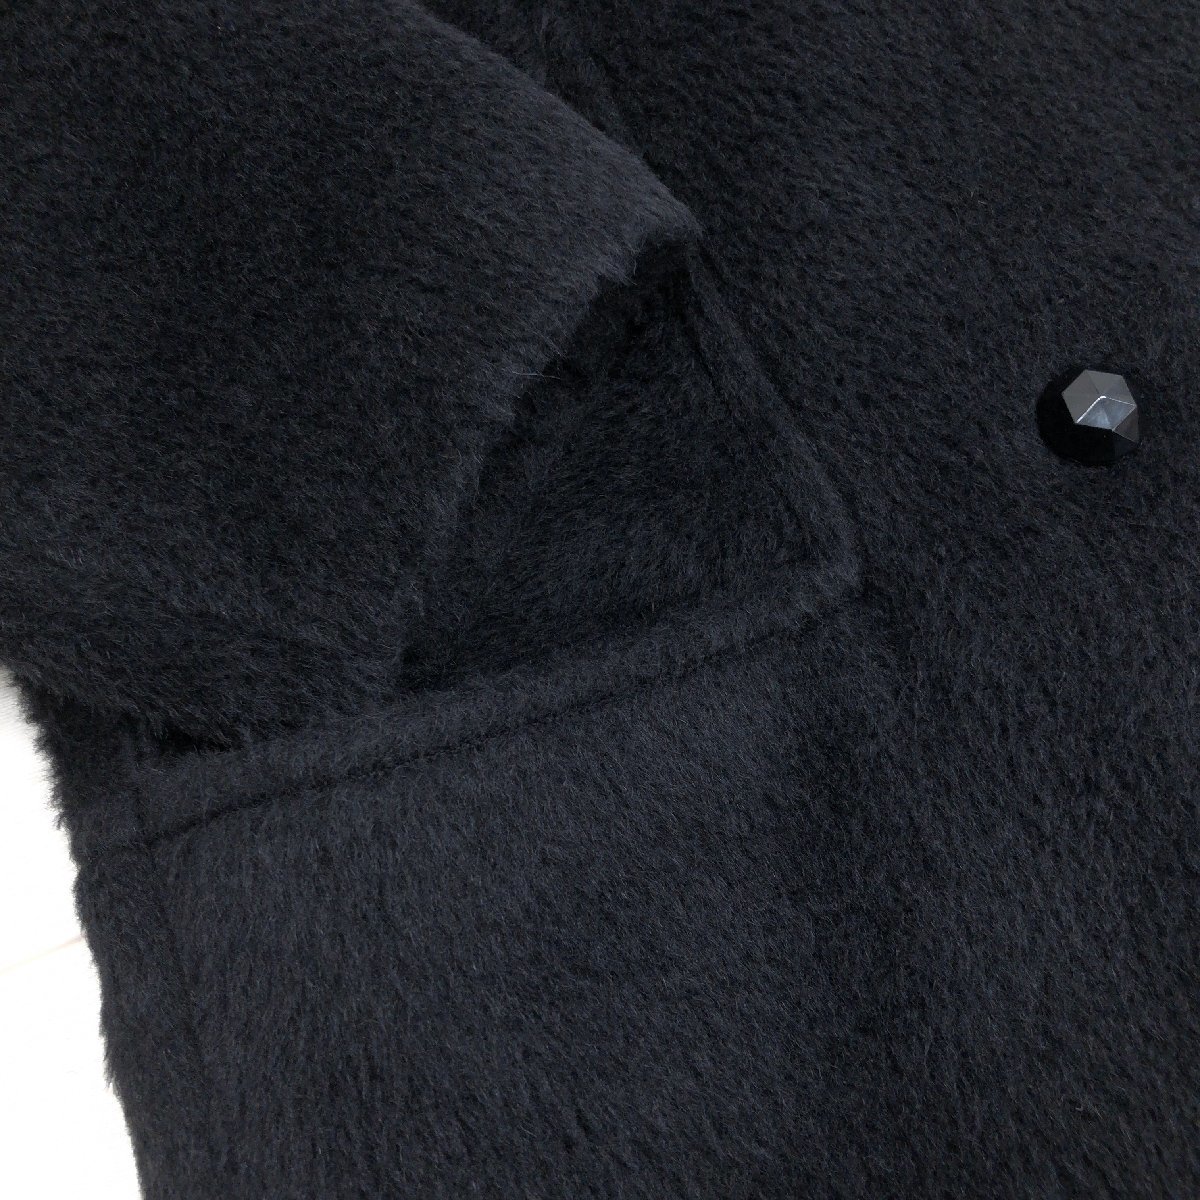 ◆DANA PARIS ダナパリ ウール100% ダブル シャギーコート 9(M) 黒 ブラック パフスリーブ ウールコート 日本製 国内正規品 レディース_画像7